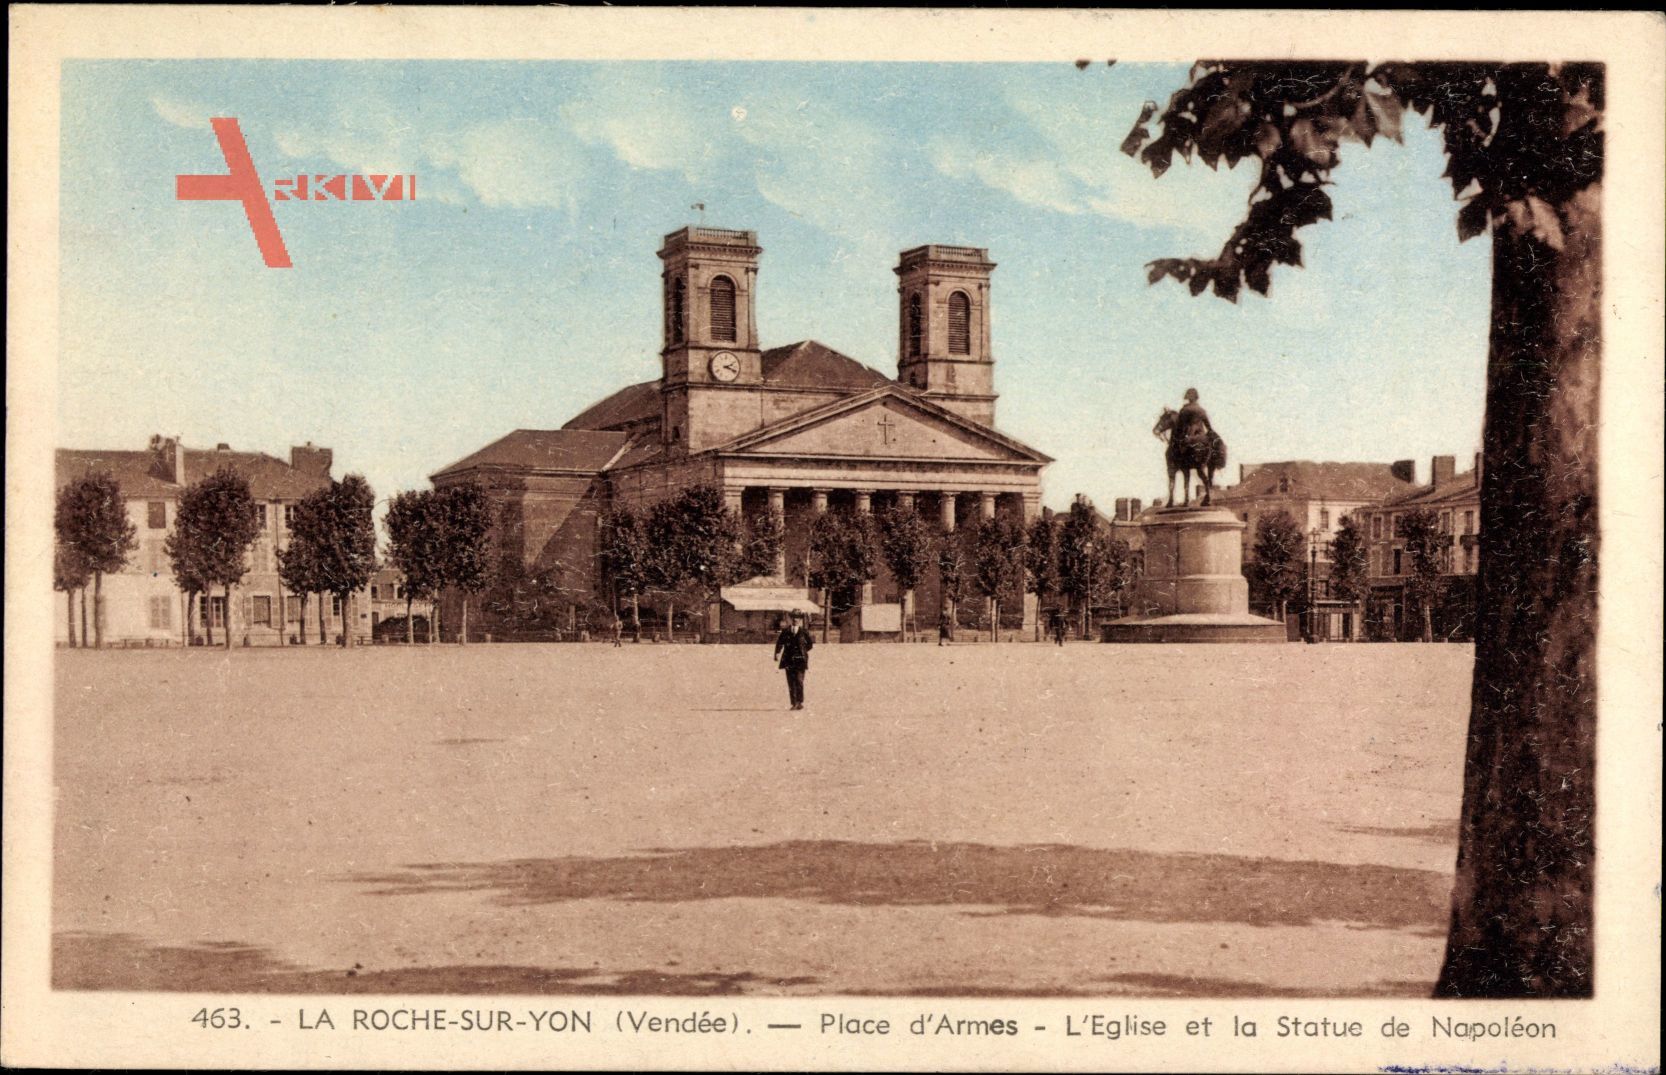 La Roche sur Yon Vendee, Place d'Armes, L'Eglise et la Statue de Napoleon